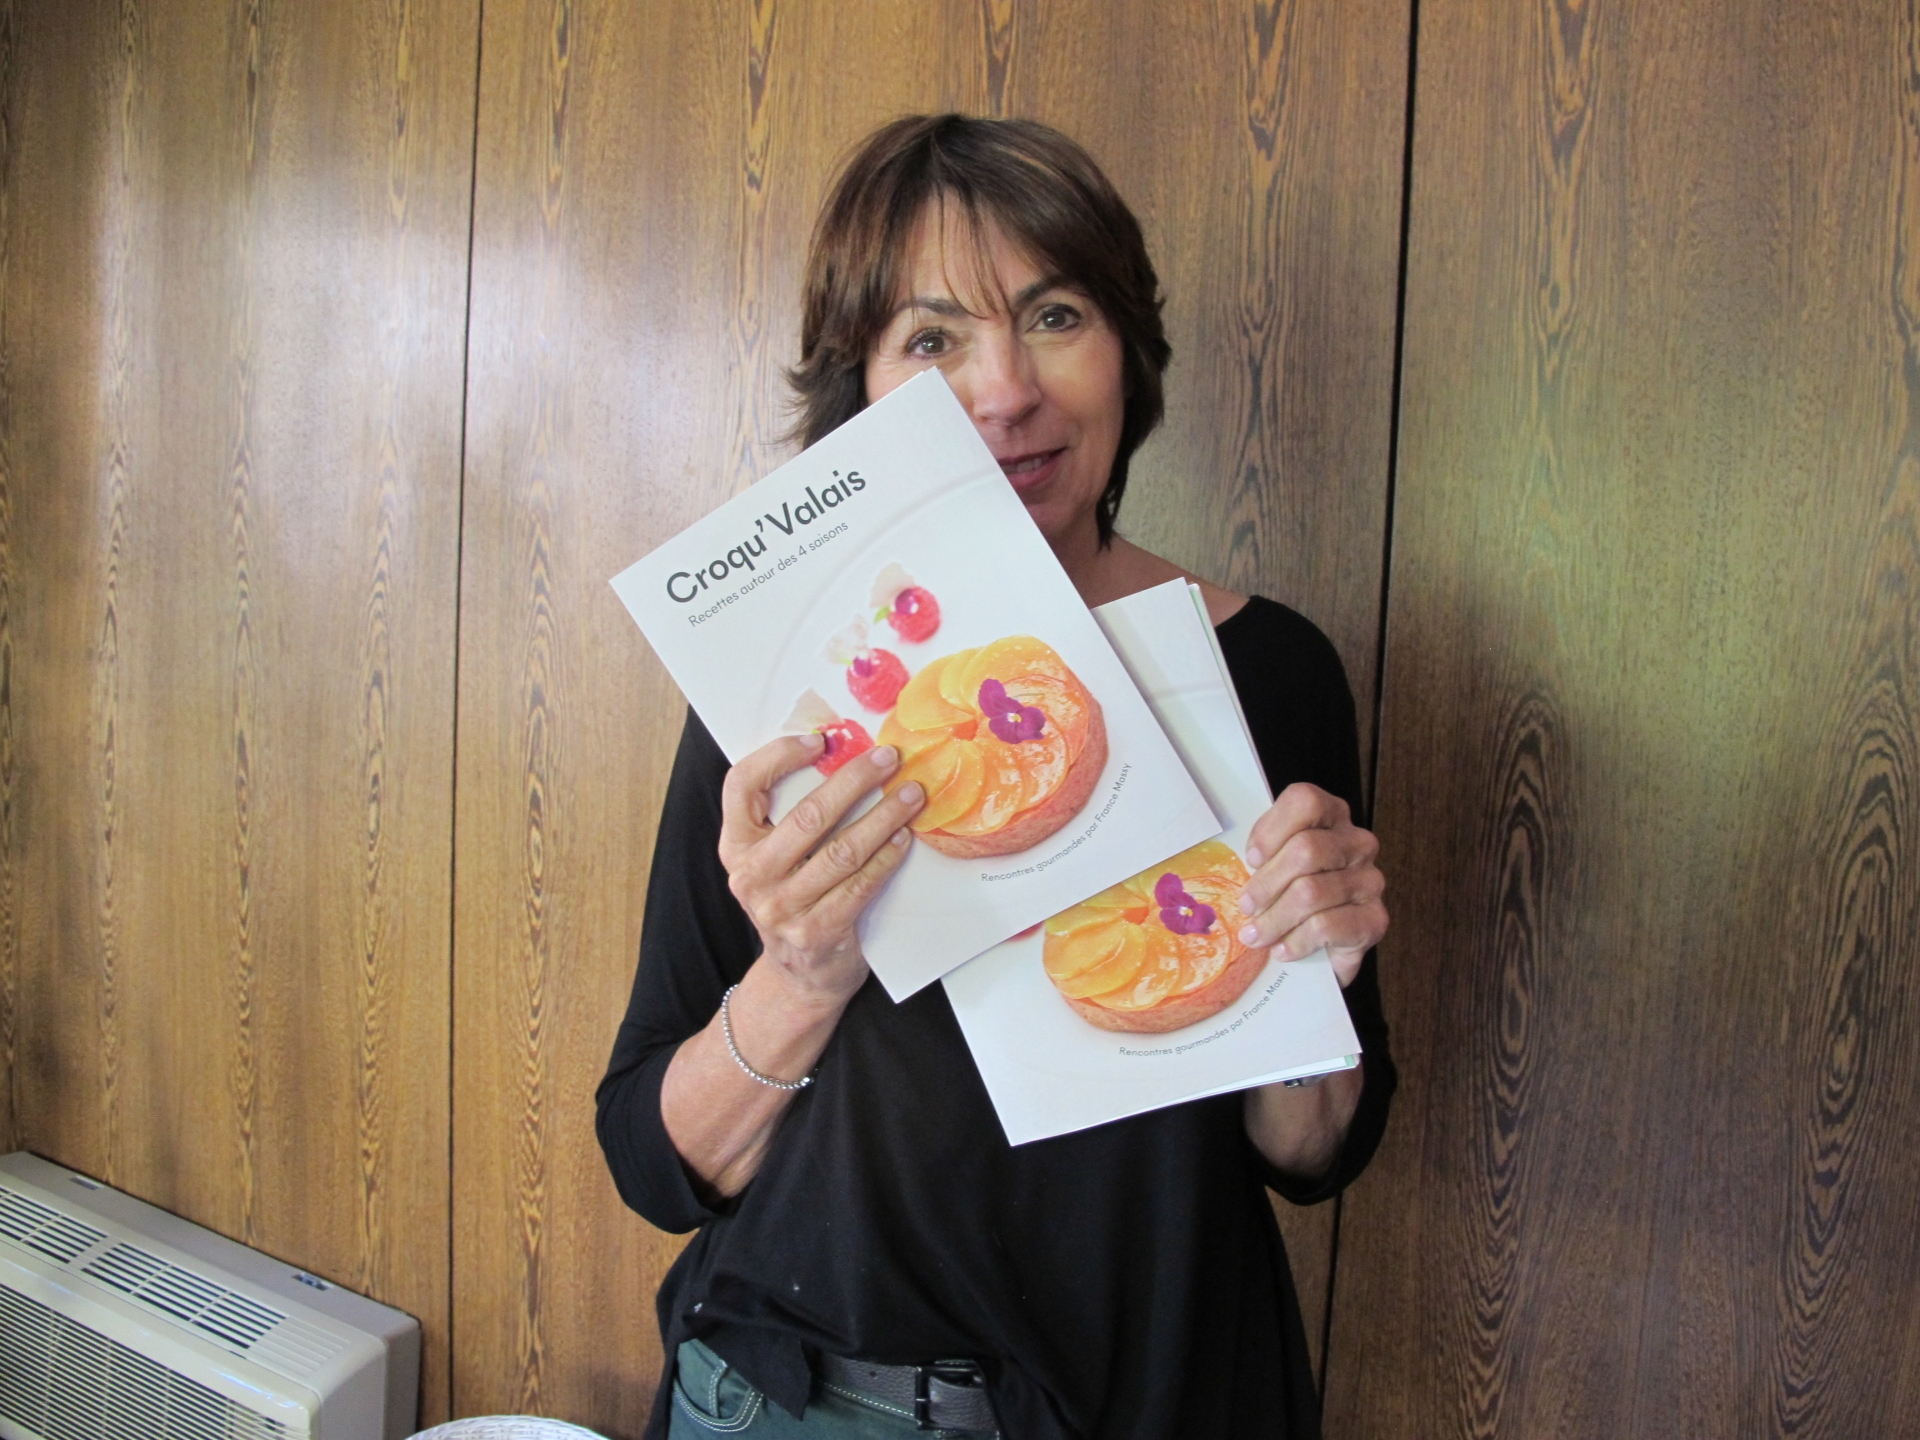 France Massy honorée et surprise de voir son ouvrage Croqu'Valais être nominé pour le prochain Gourmand World Cookbook Awards. 